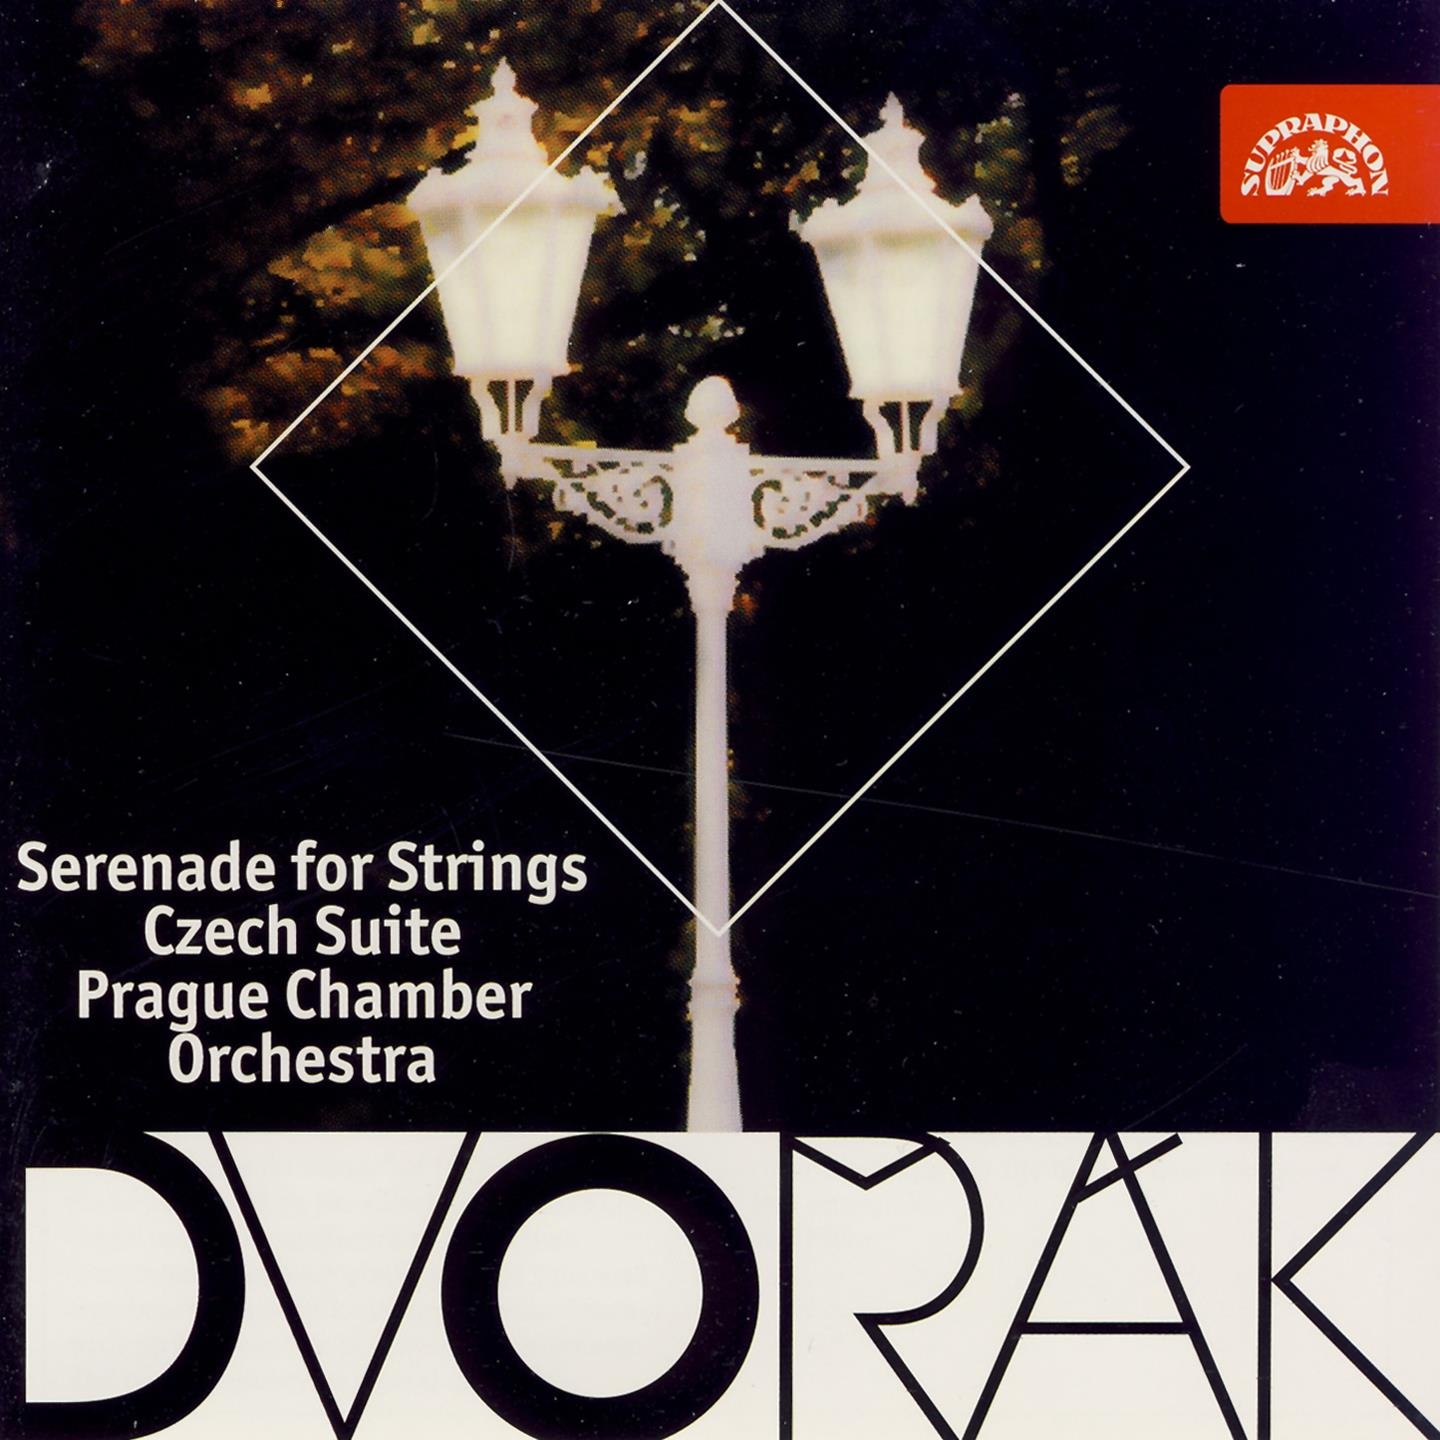 Dvoa k: Serenade for Strings, Czech Suite